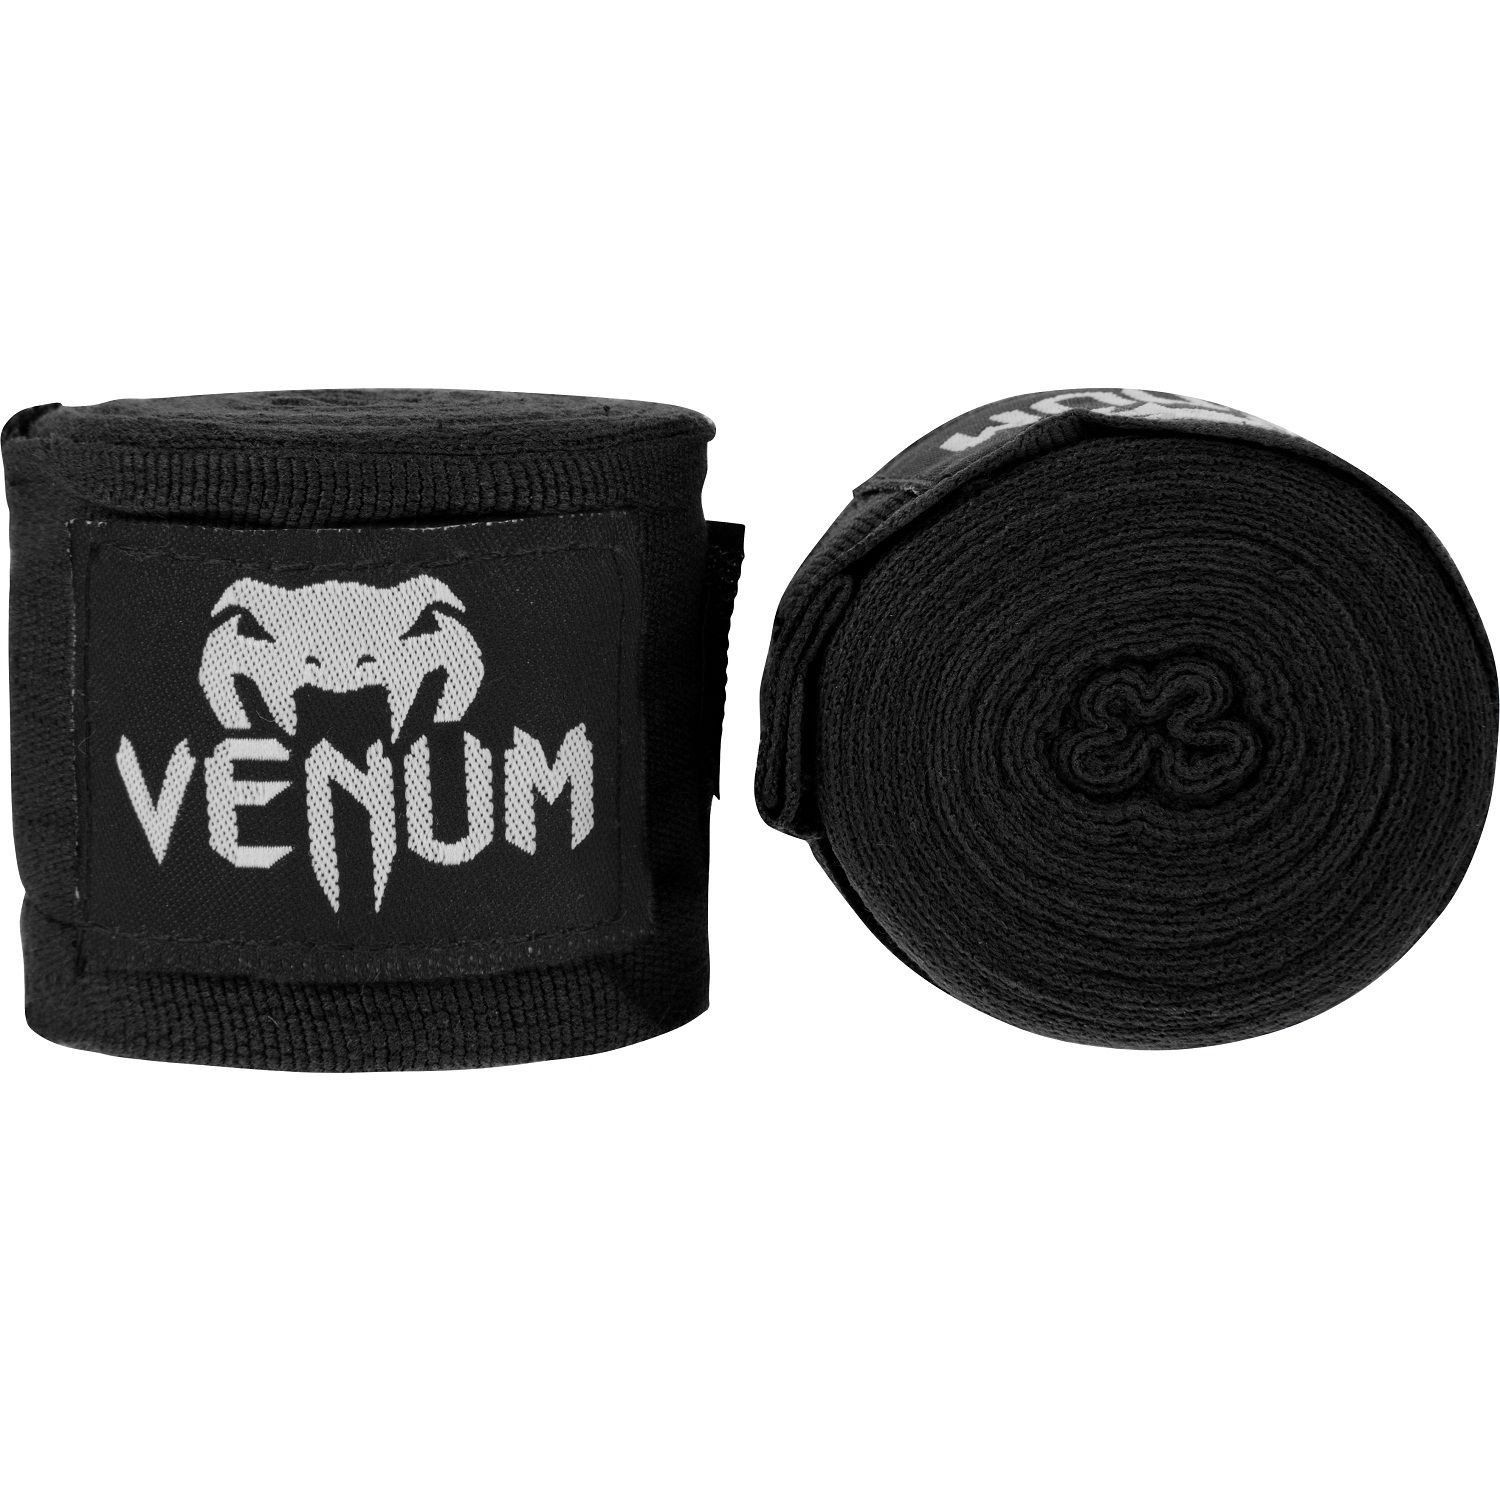 Bandages de Boxe Venum Kontact - Original - 4 mètres (4 coloris) - Noir